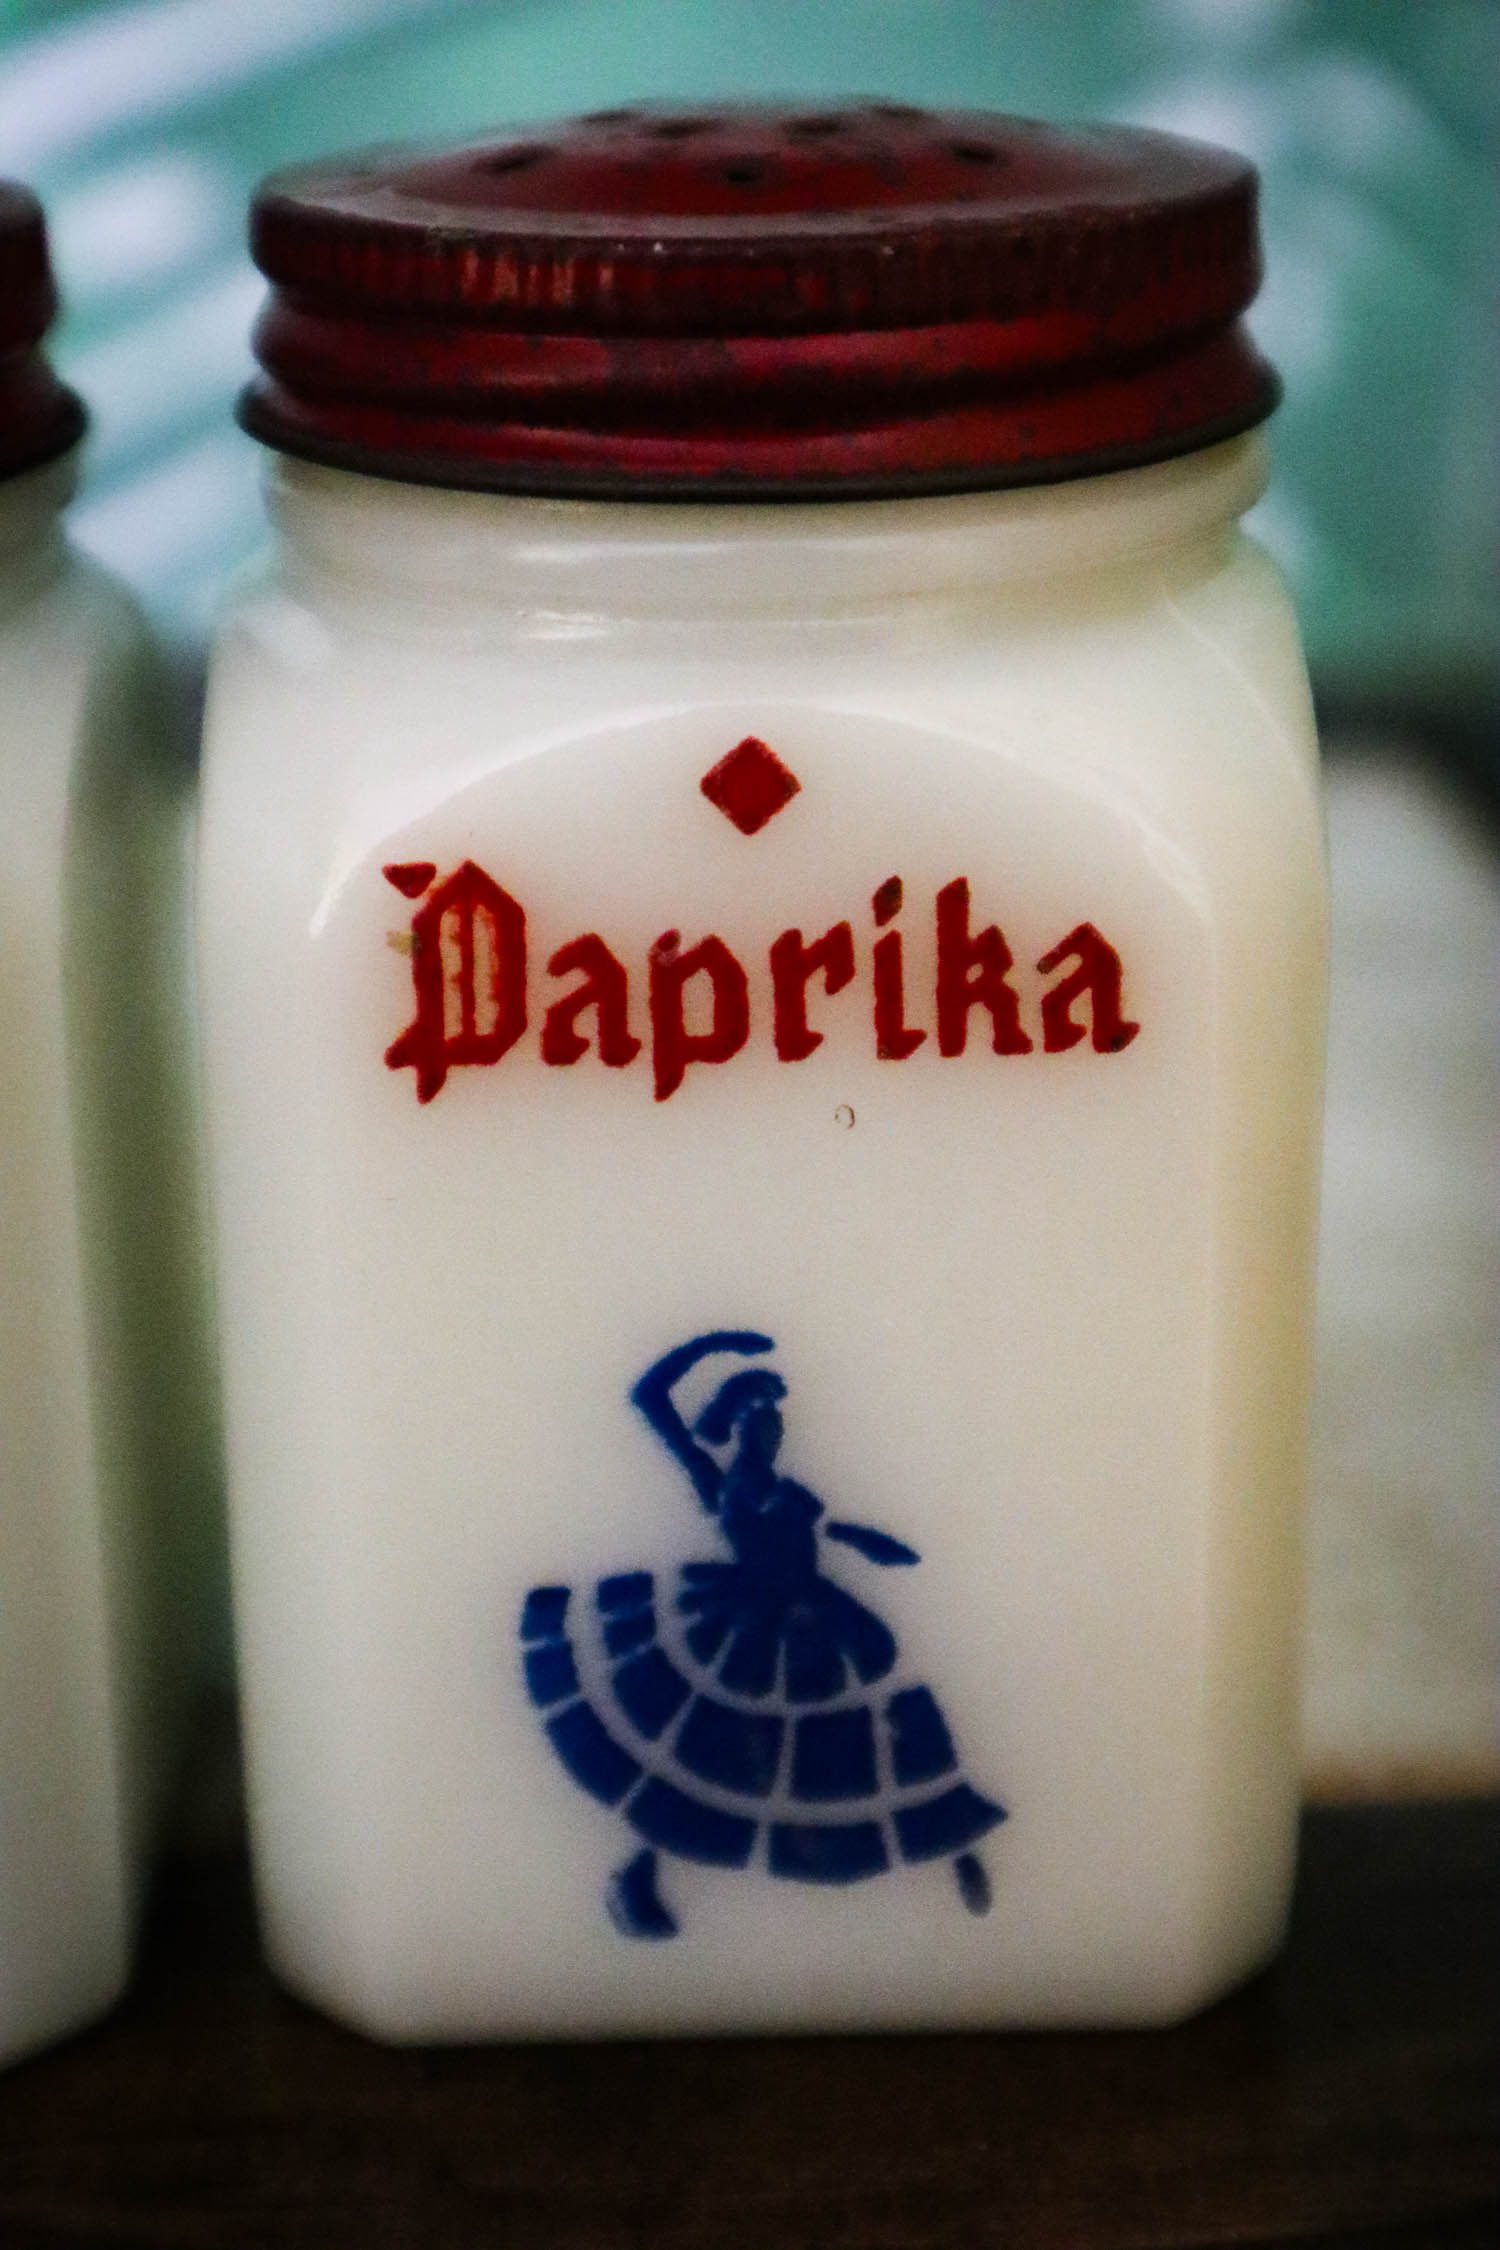 https://justdandies.co/cdn/shop/files/2846-hazel-atlas-milk-glass-spice-jars-pepper-paprika-1.jpg?v=1699455411&width=1946